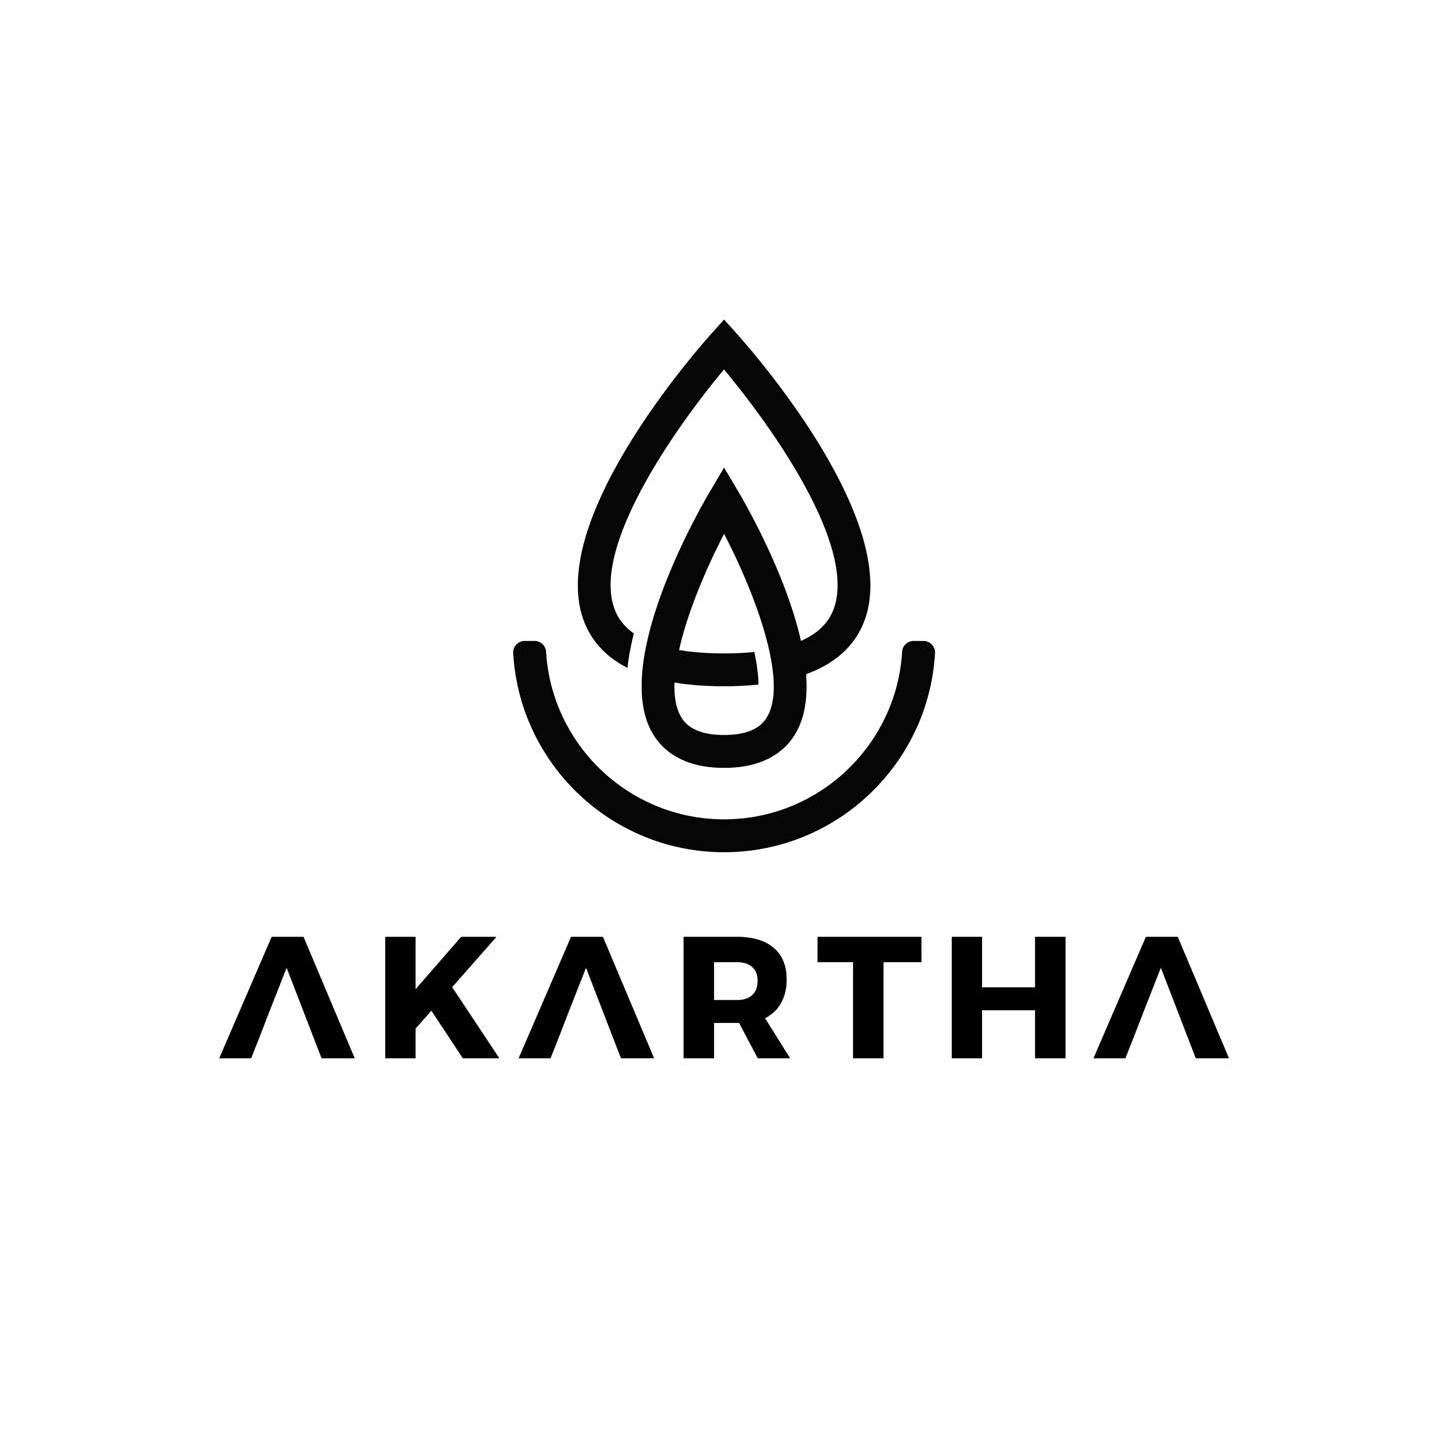 Akartha